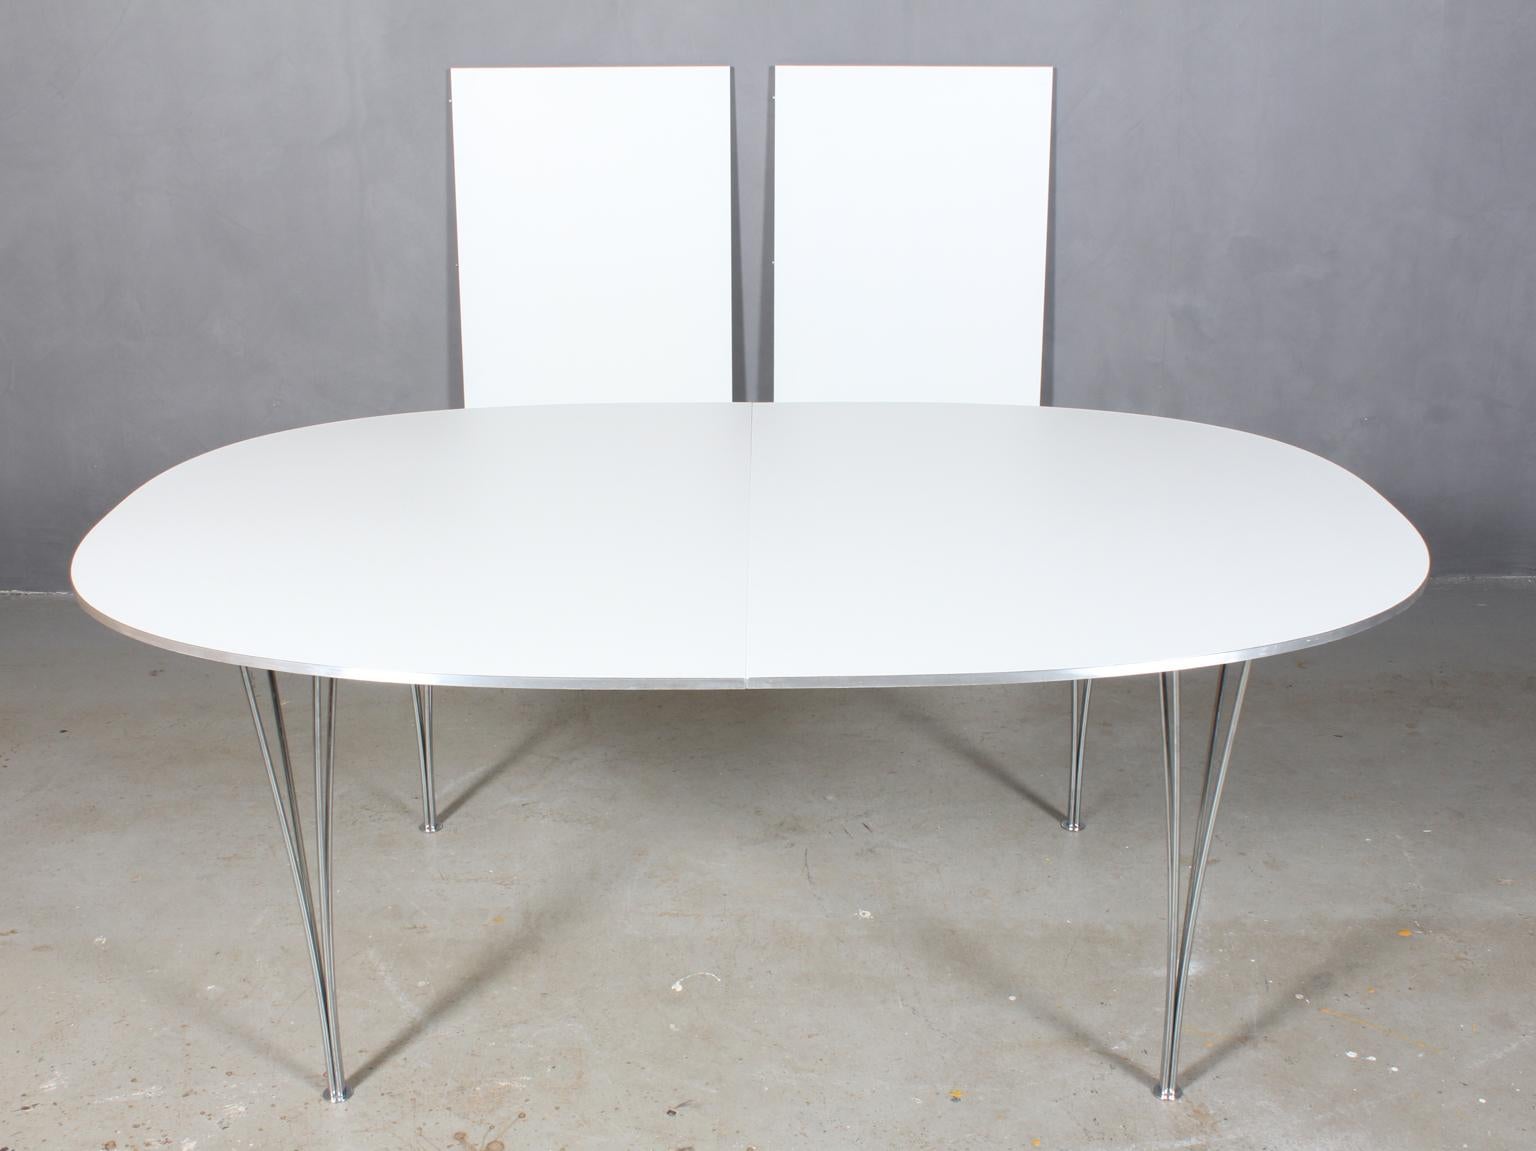 Table de salle à manger Piet Hein & Bruno Mathsson avec nouveau plateau blanc laqué professionnel. Liste latérale Alu.

Deux feuilles d'extension de 60 cms.

Pieds en métal chromé.

Modèle Super Elipse, fabriqué par Fritz Hansen.

C'est